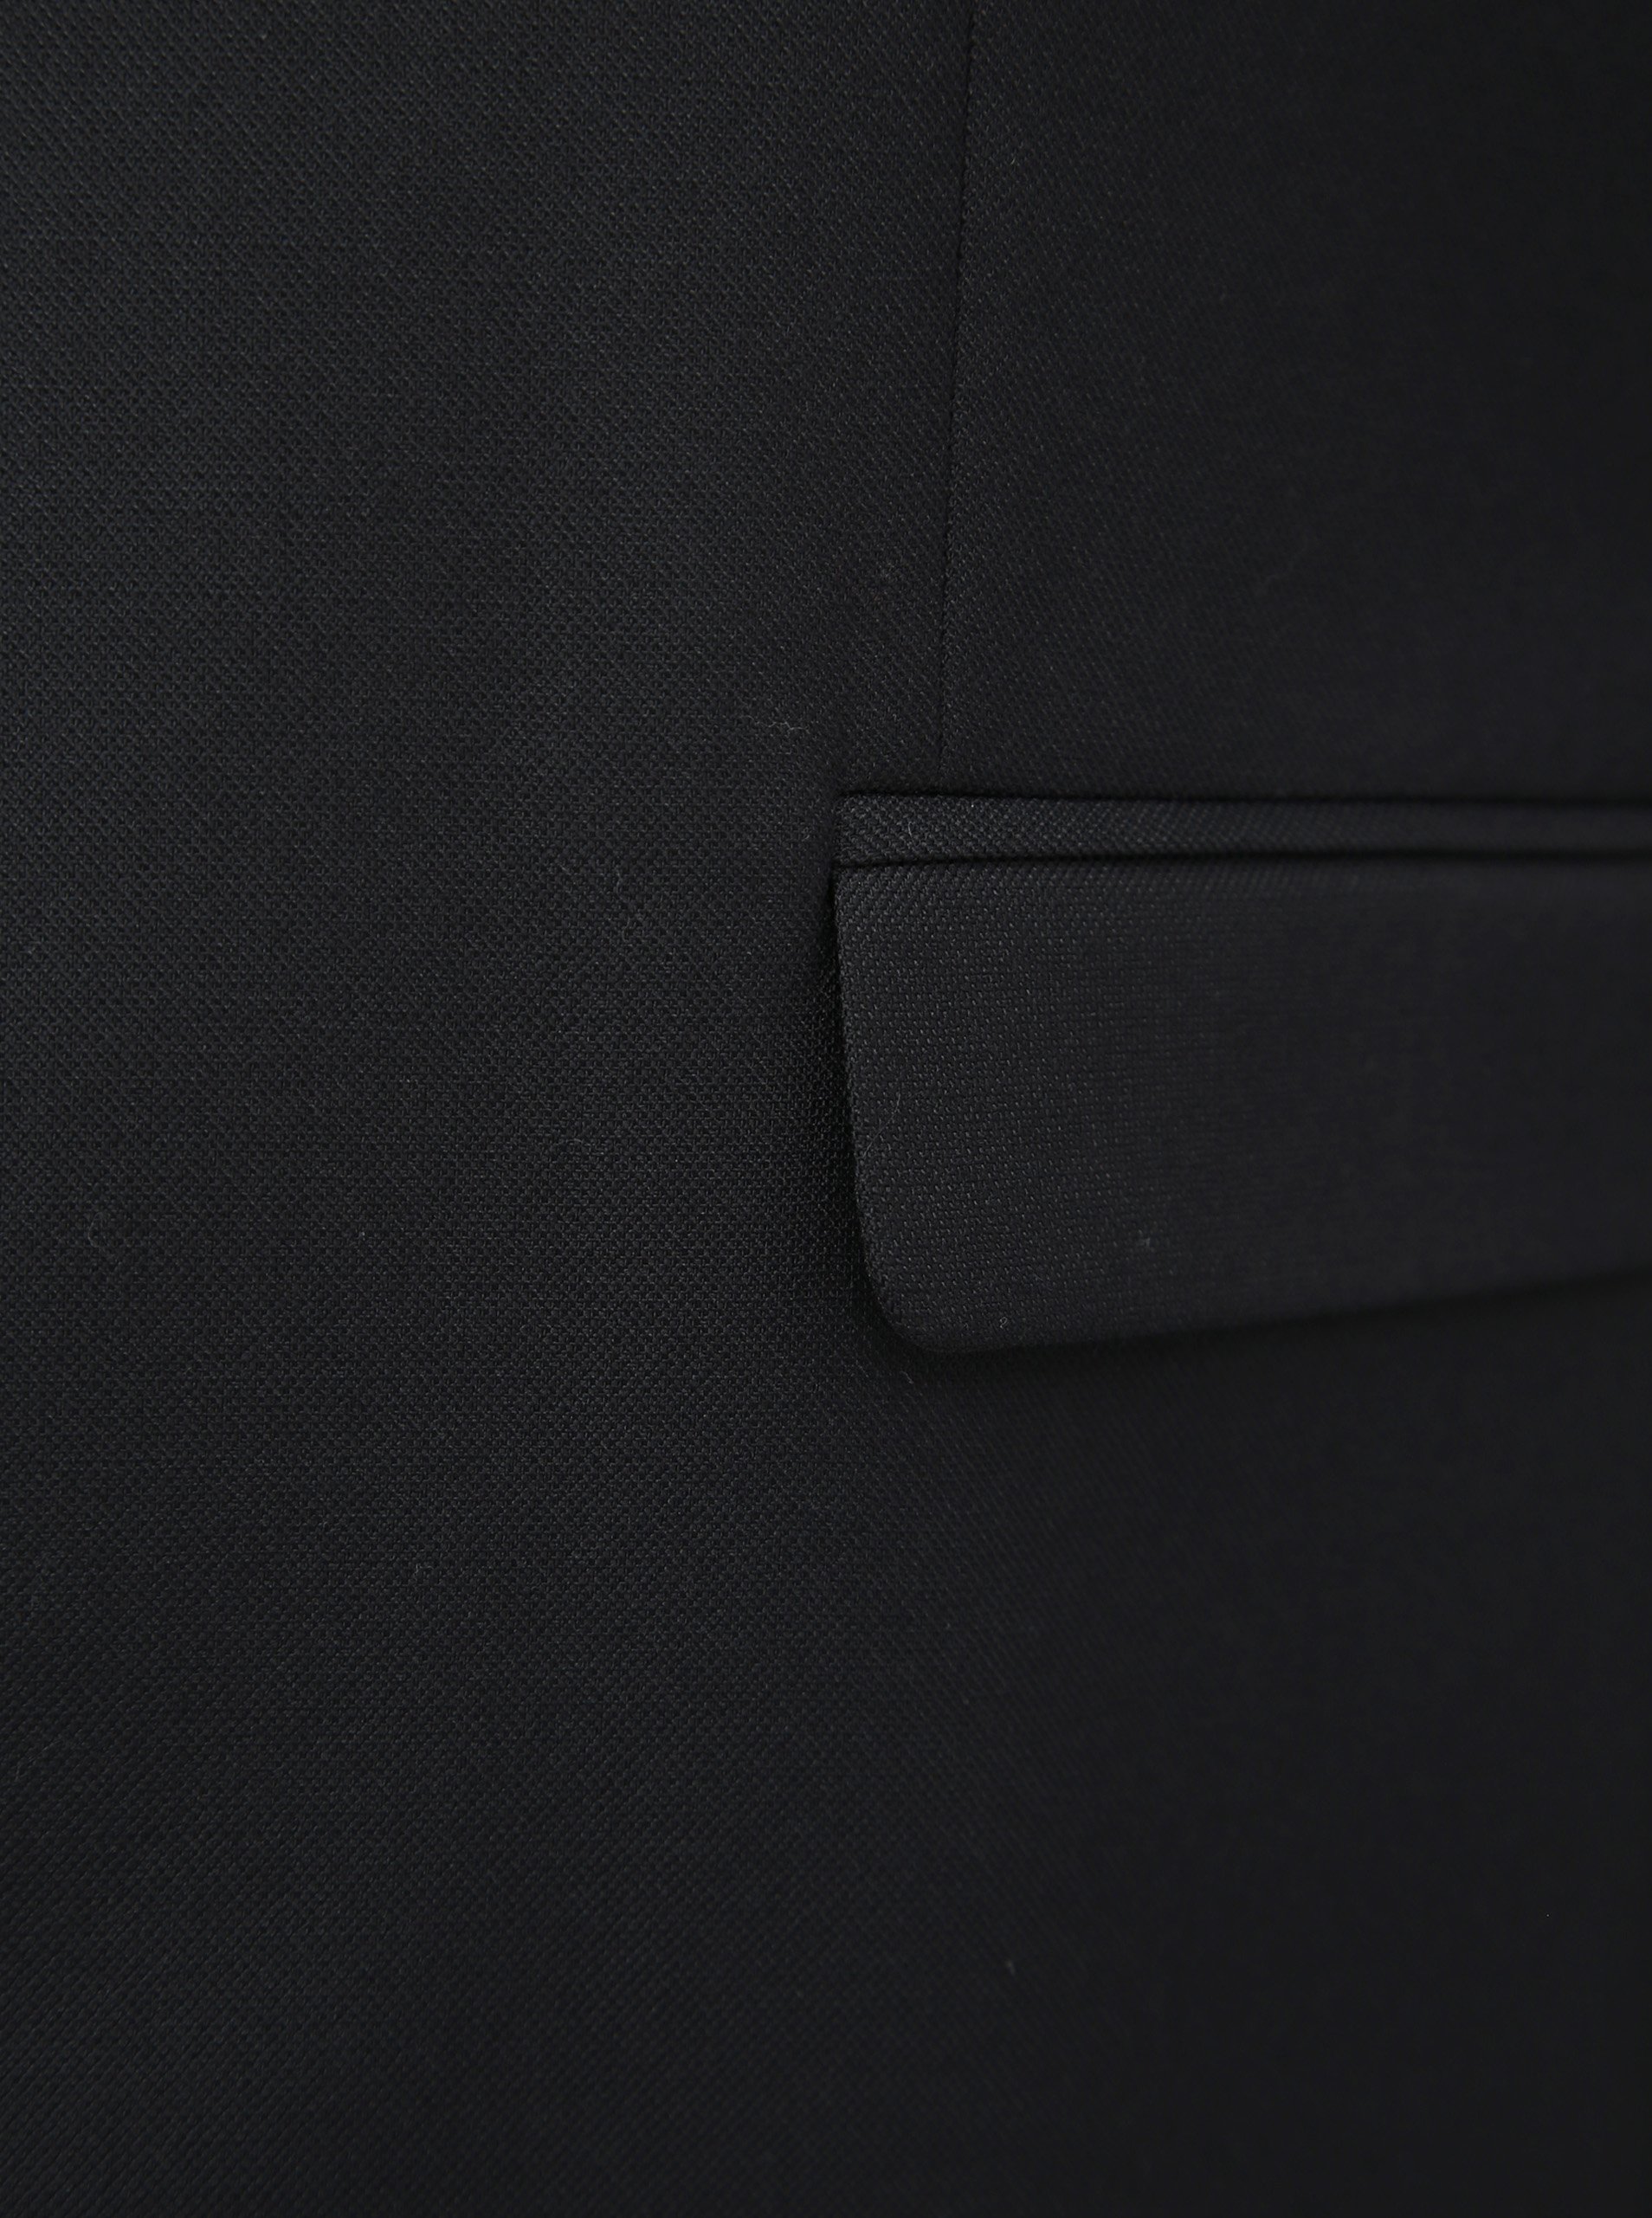 Čierne oblekové sako s prímesou vlny Jack & Jones Solaris.